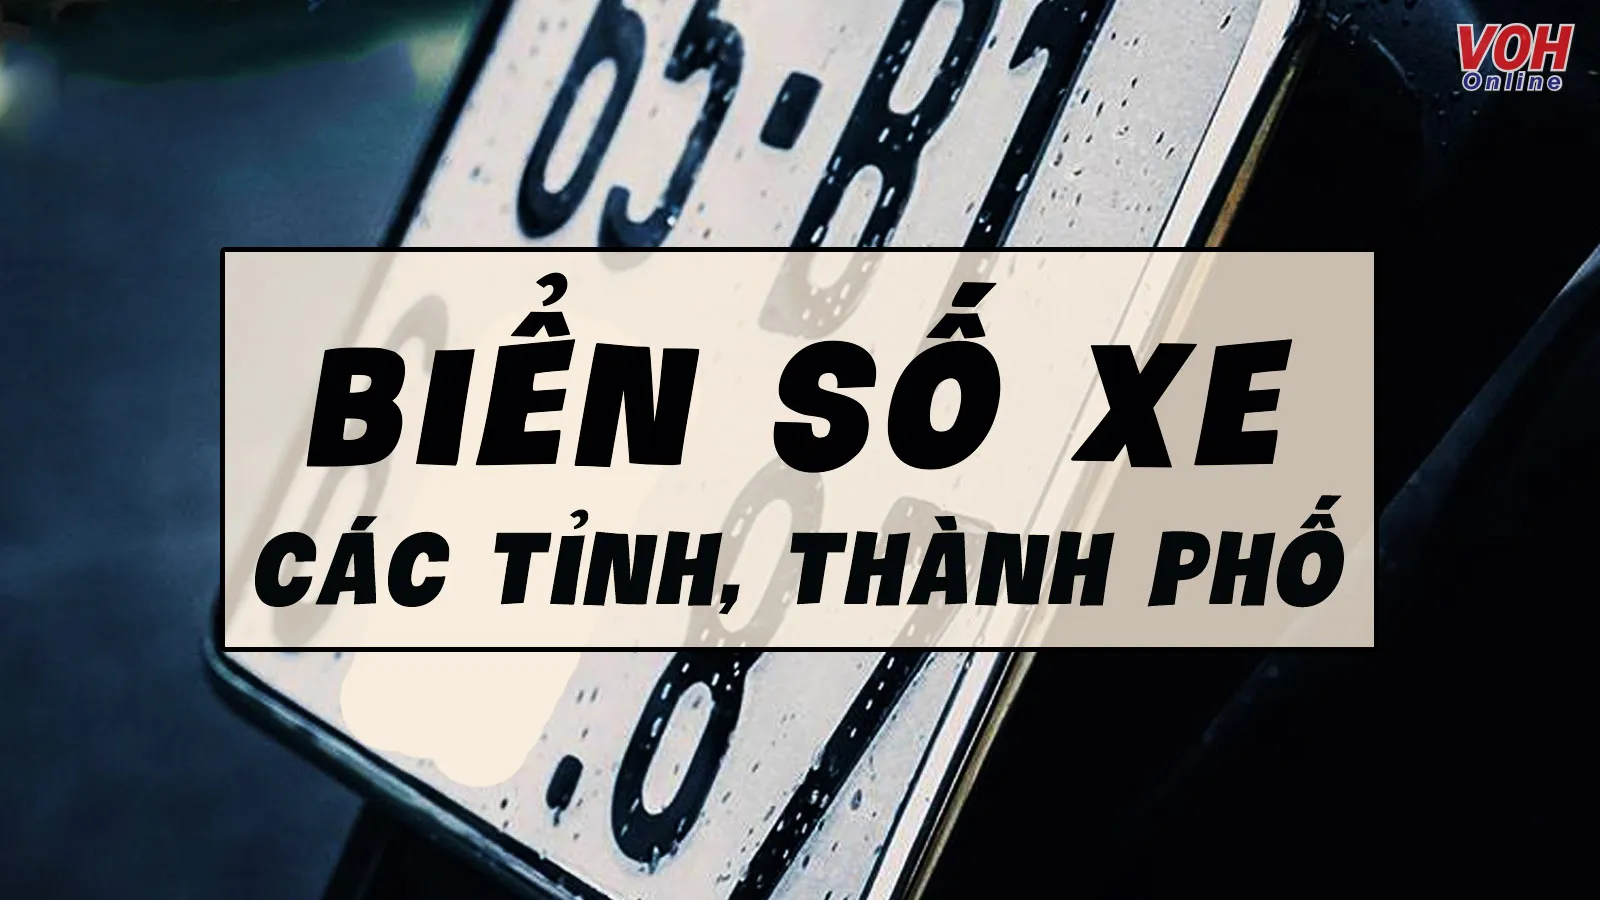 Danh sách số hiệu biển số xe các tỉnh, thành phố của Việt Nam